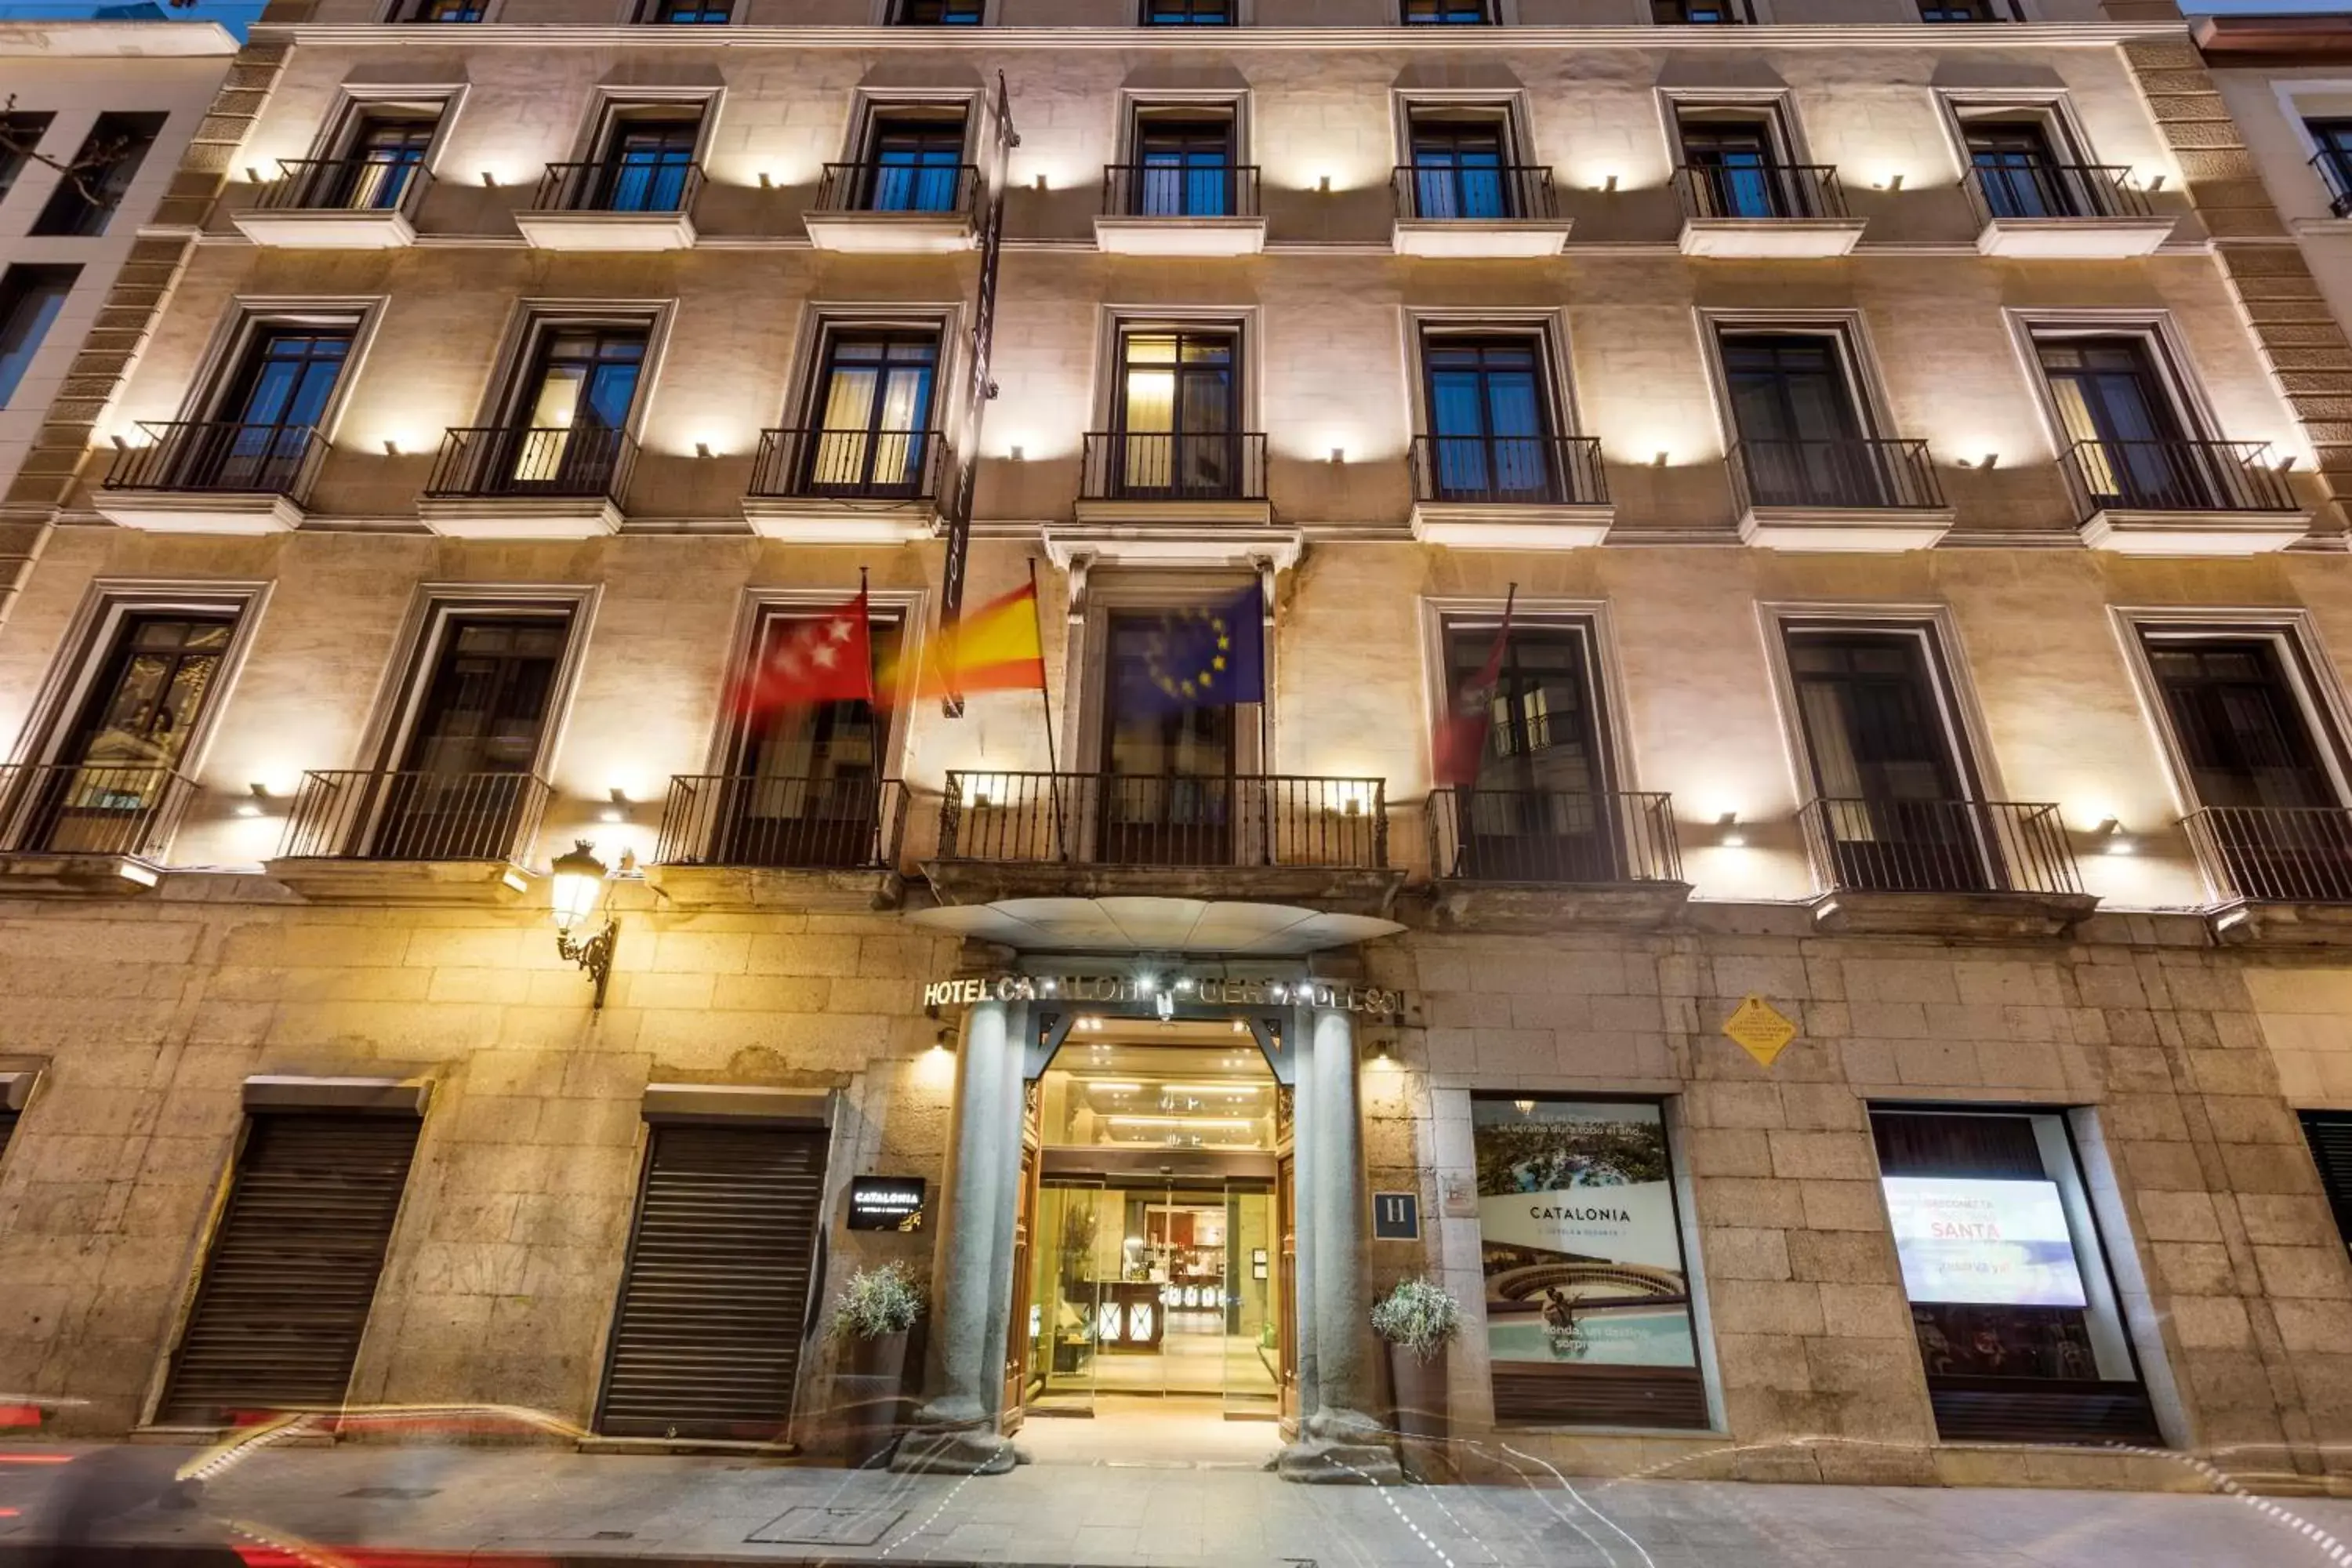 Facade/entrance, Property Building in Catalonia Puerta del Sol